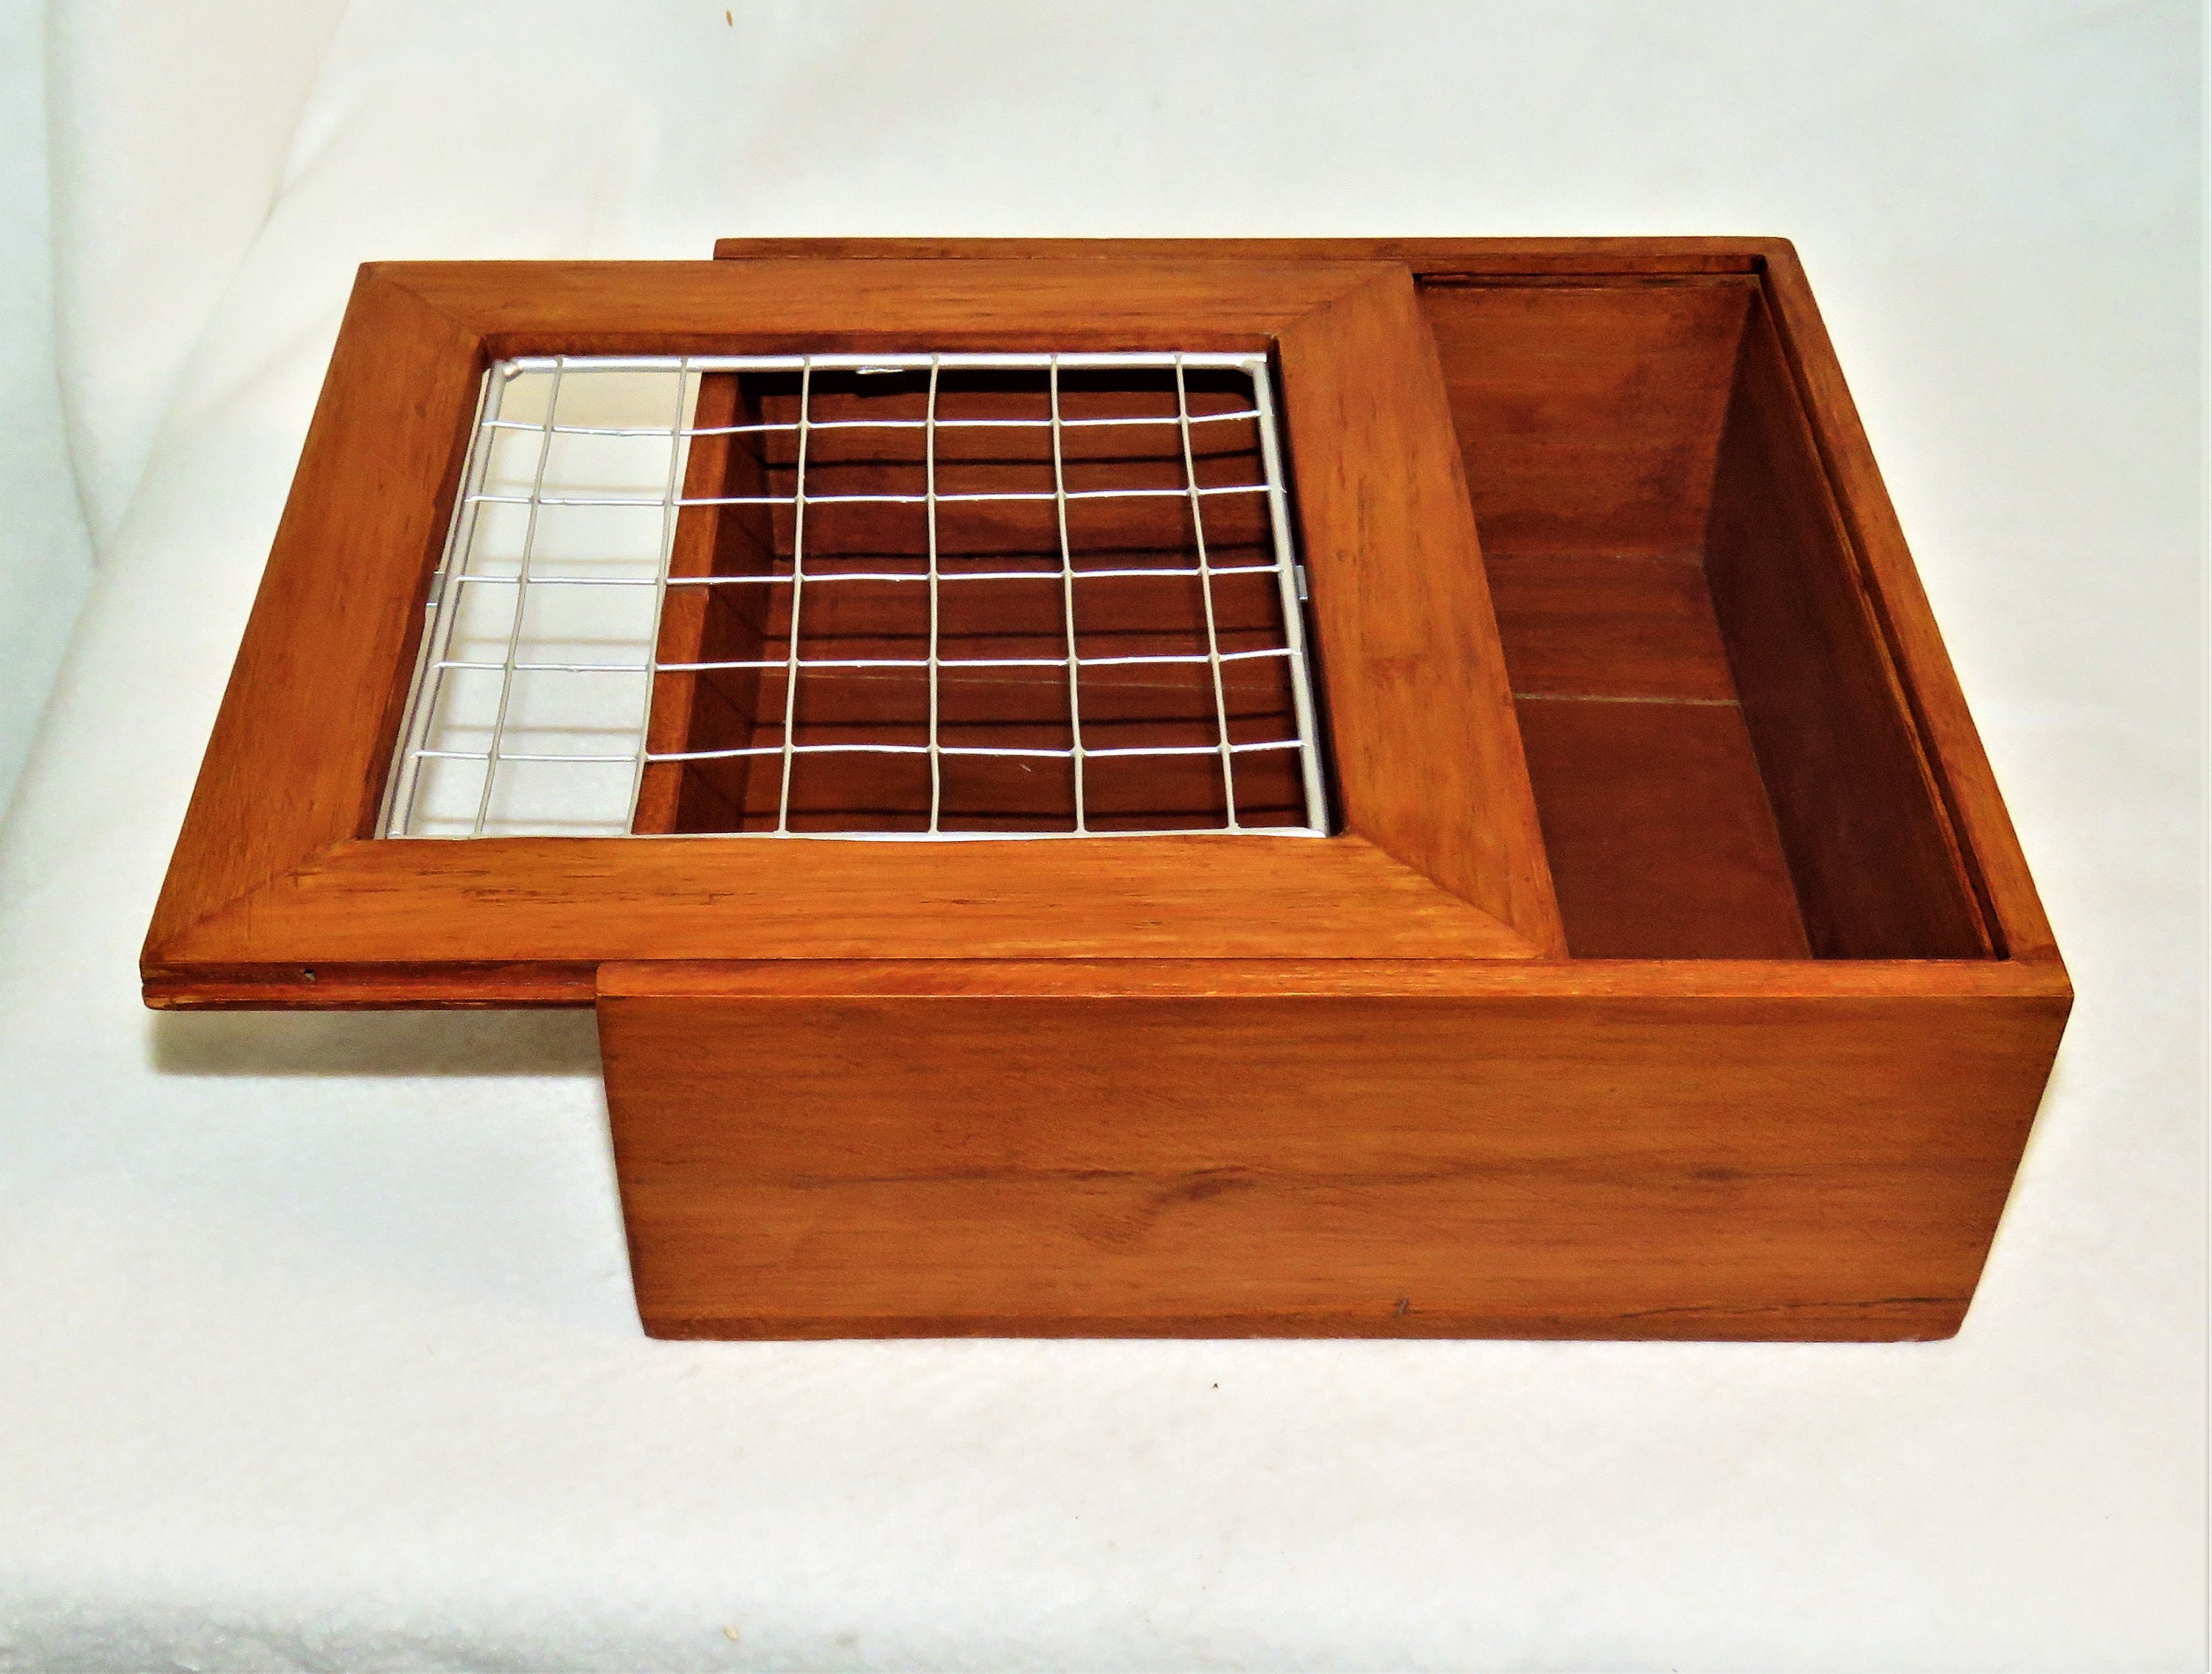 Caja de madera rectangular con frontal redondeado y cierre metálico 12.5 x  8.5 x 5.5 cm. Caja, cofre para decorar con tapa, alma